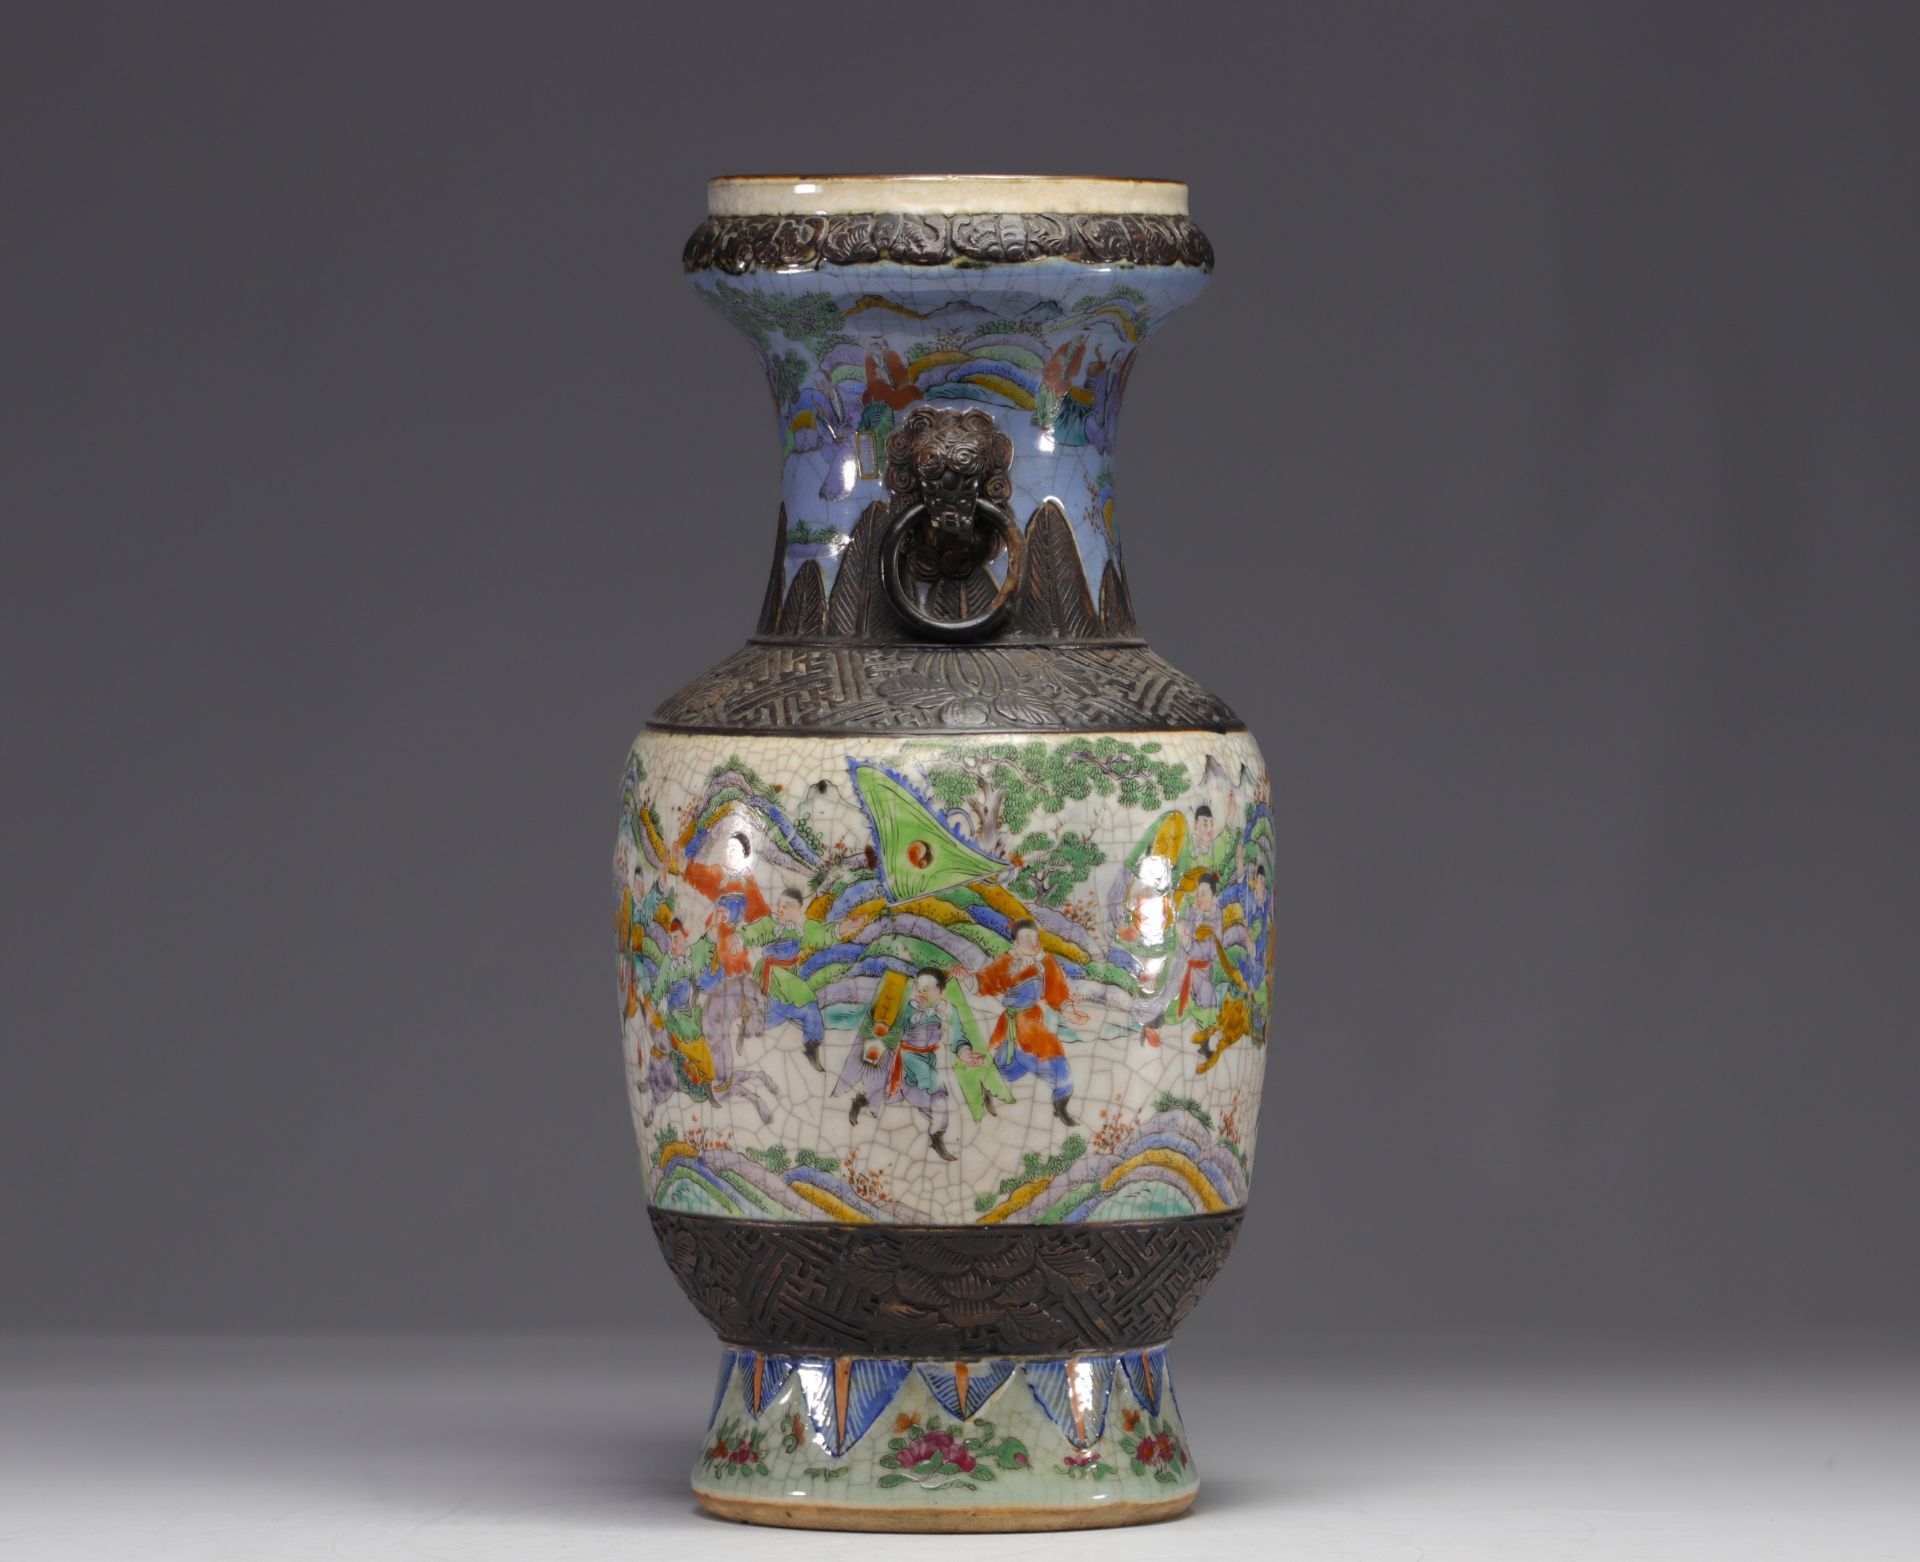 China - Nanking porcelain vase with battle scene decoration, 19th century. - Image 3 of 6